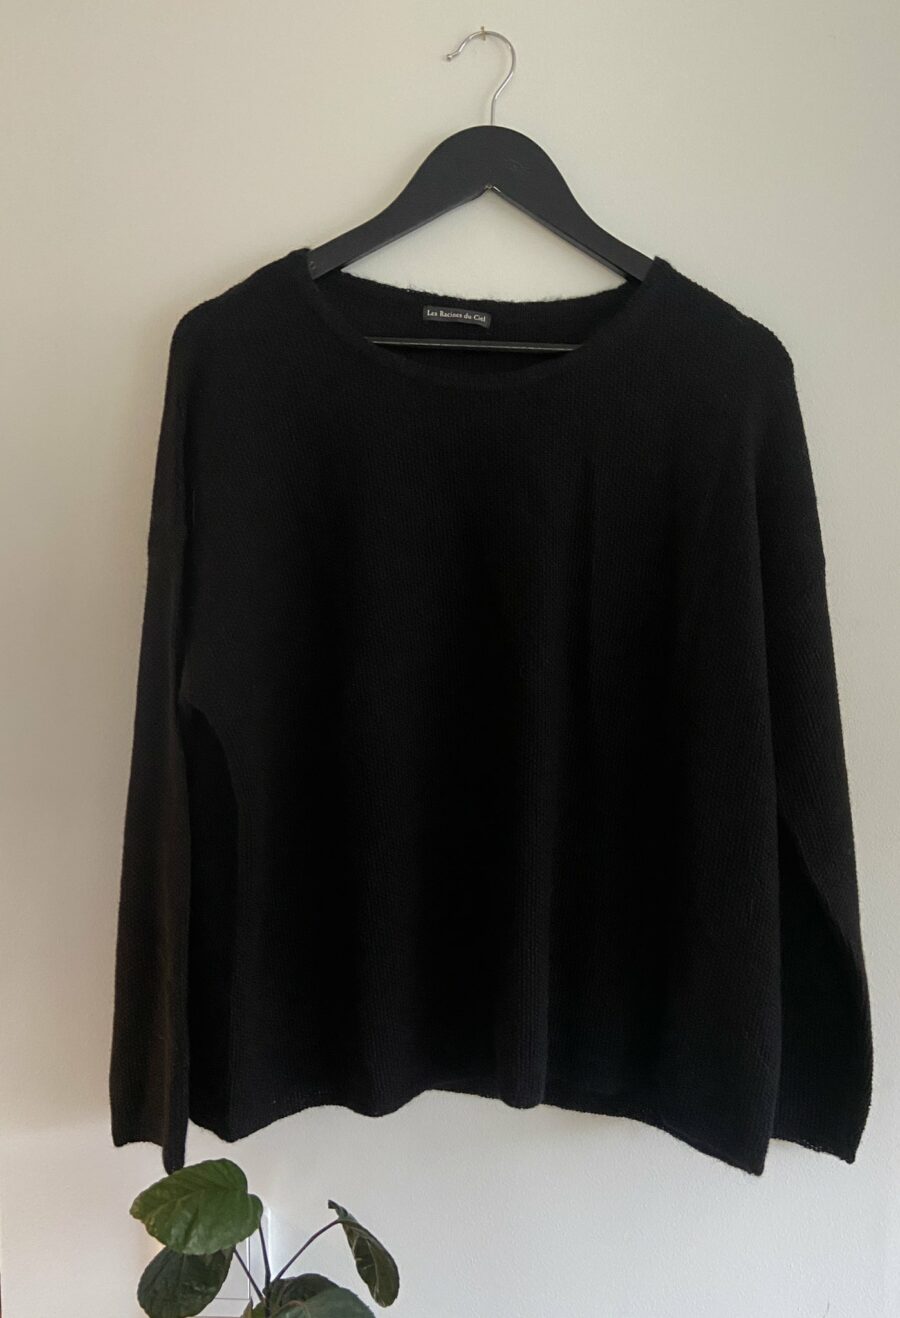 Les Racines du Ciel - Gwen Large Sweater, Black